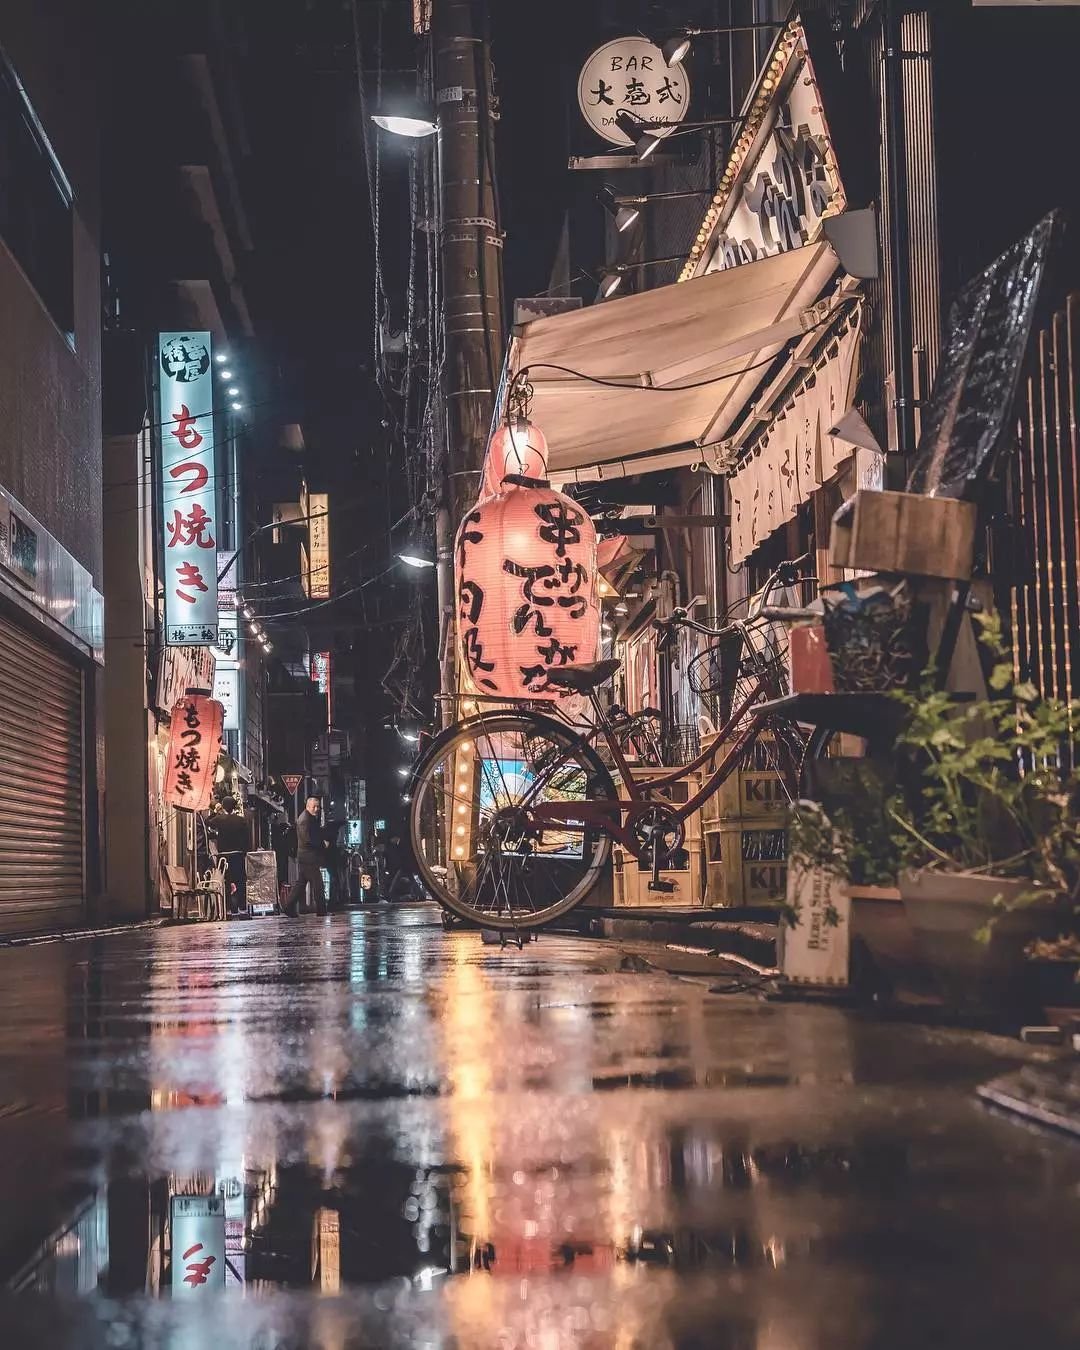 日本摄影师的这组东京街景照火了!这样的画风,让人无法抗拒!